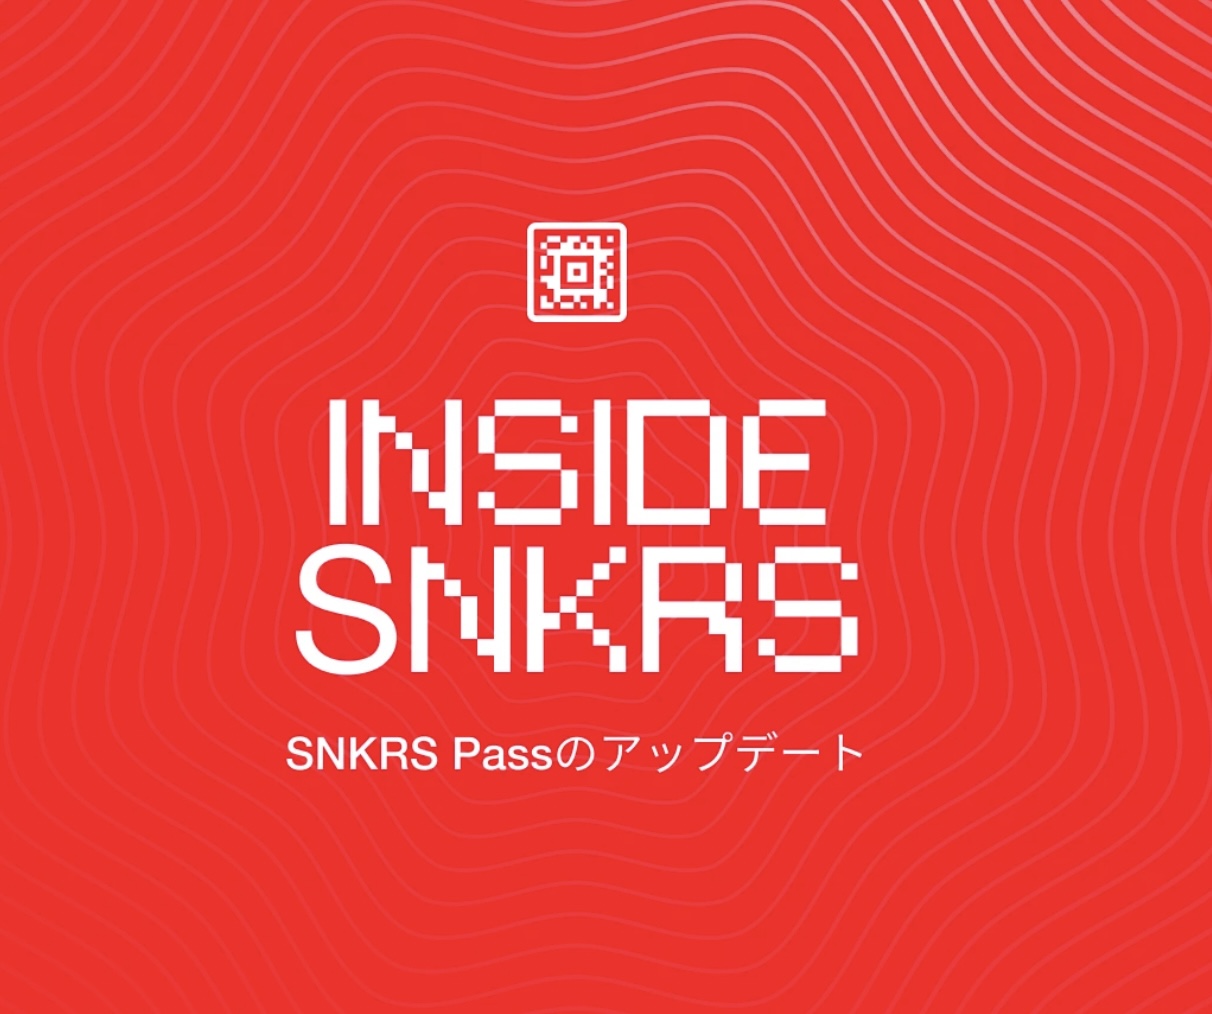 Nike SNKRS Pass が遂に先着順から抽選システム導入